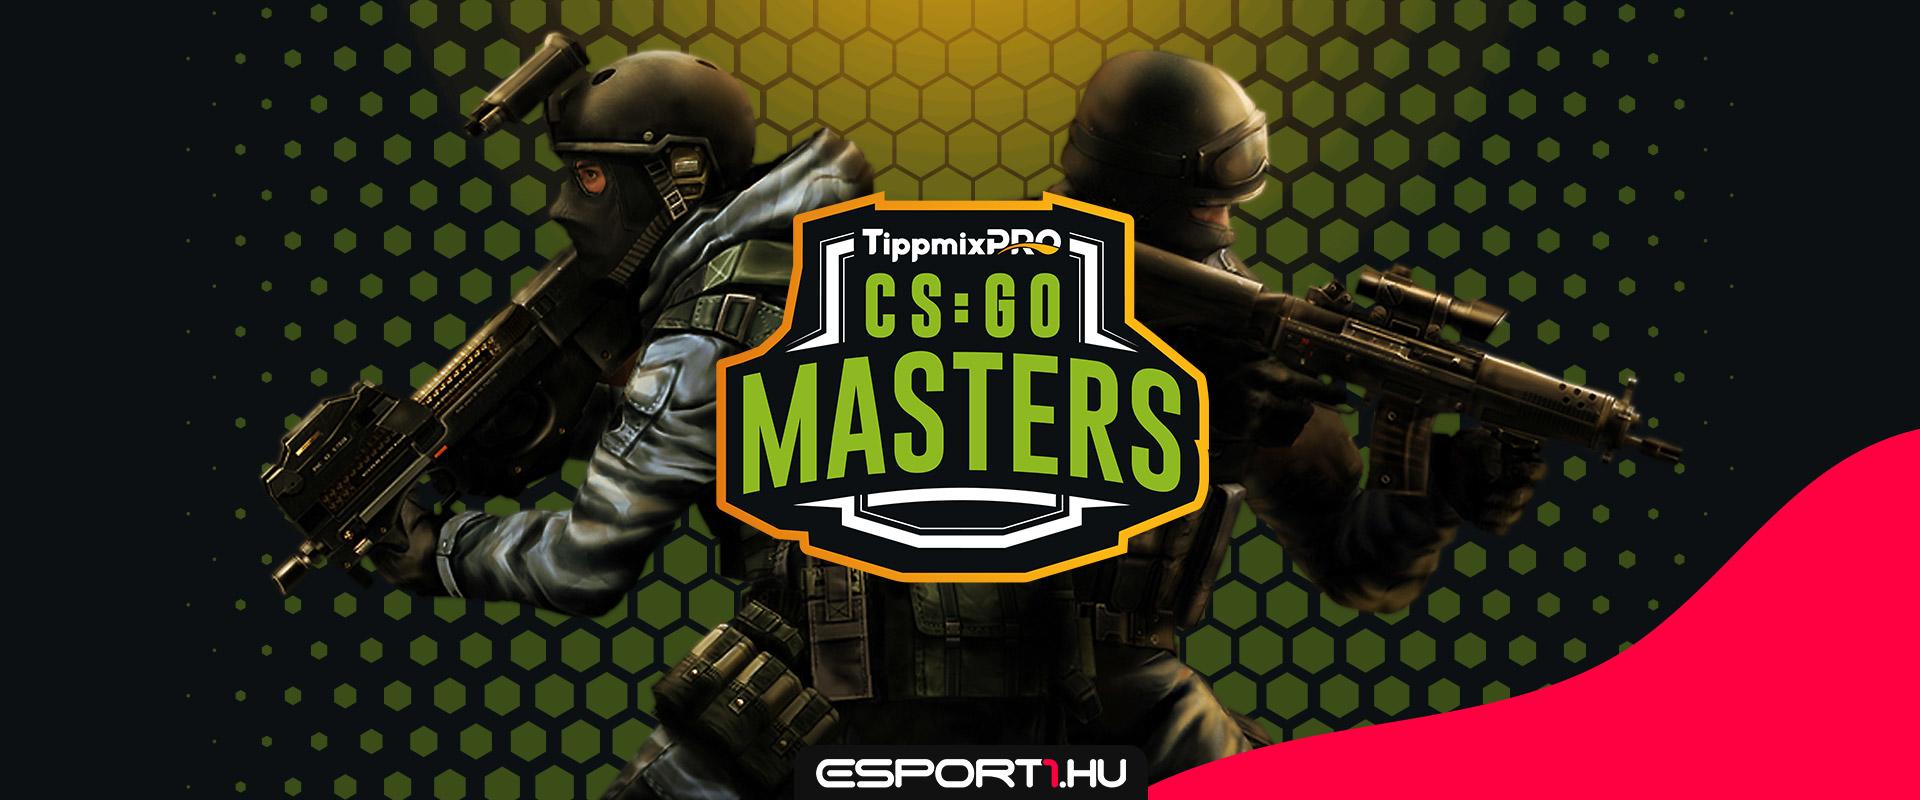 4 millió forint összdíjazással indul a TippmixPro CS:GO Masters, nevezz még ma a bajnokságra!